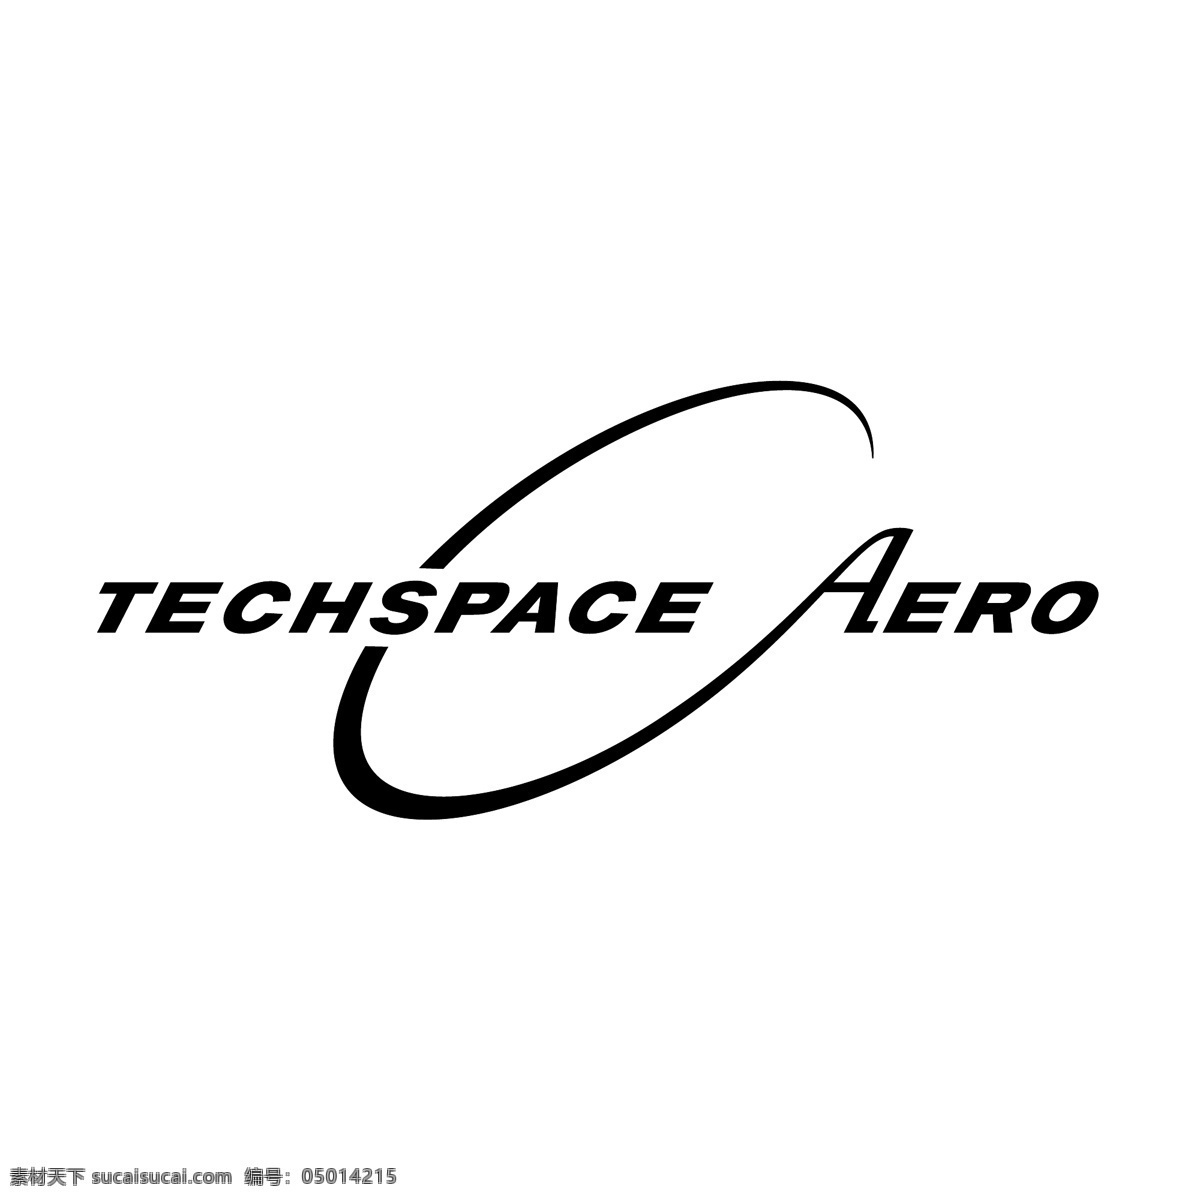 航空航天 科技 公司 标志 免费 psd源文件 logo设计